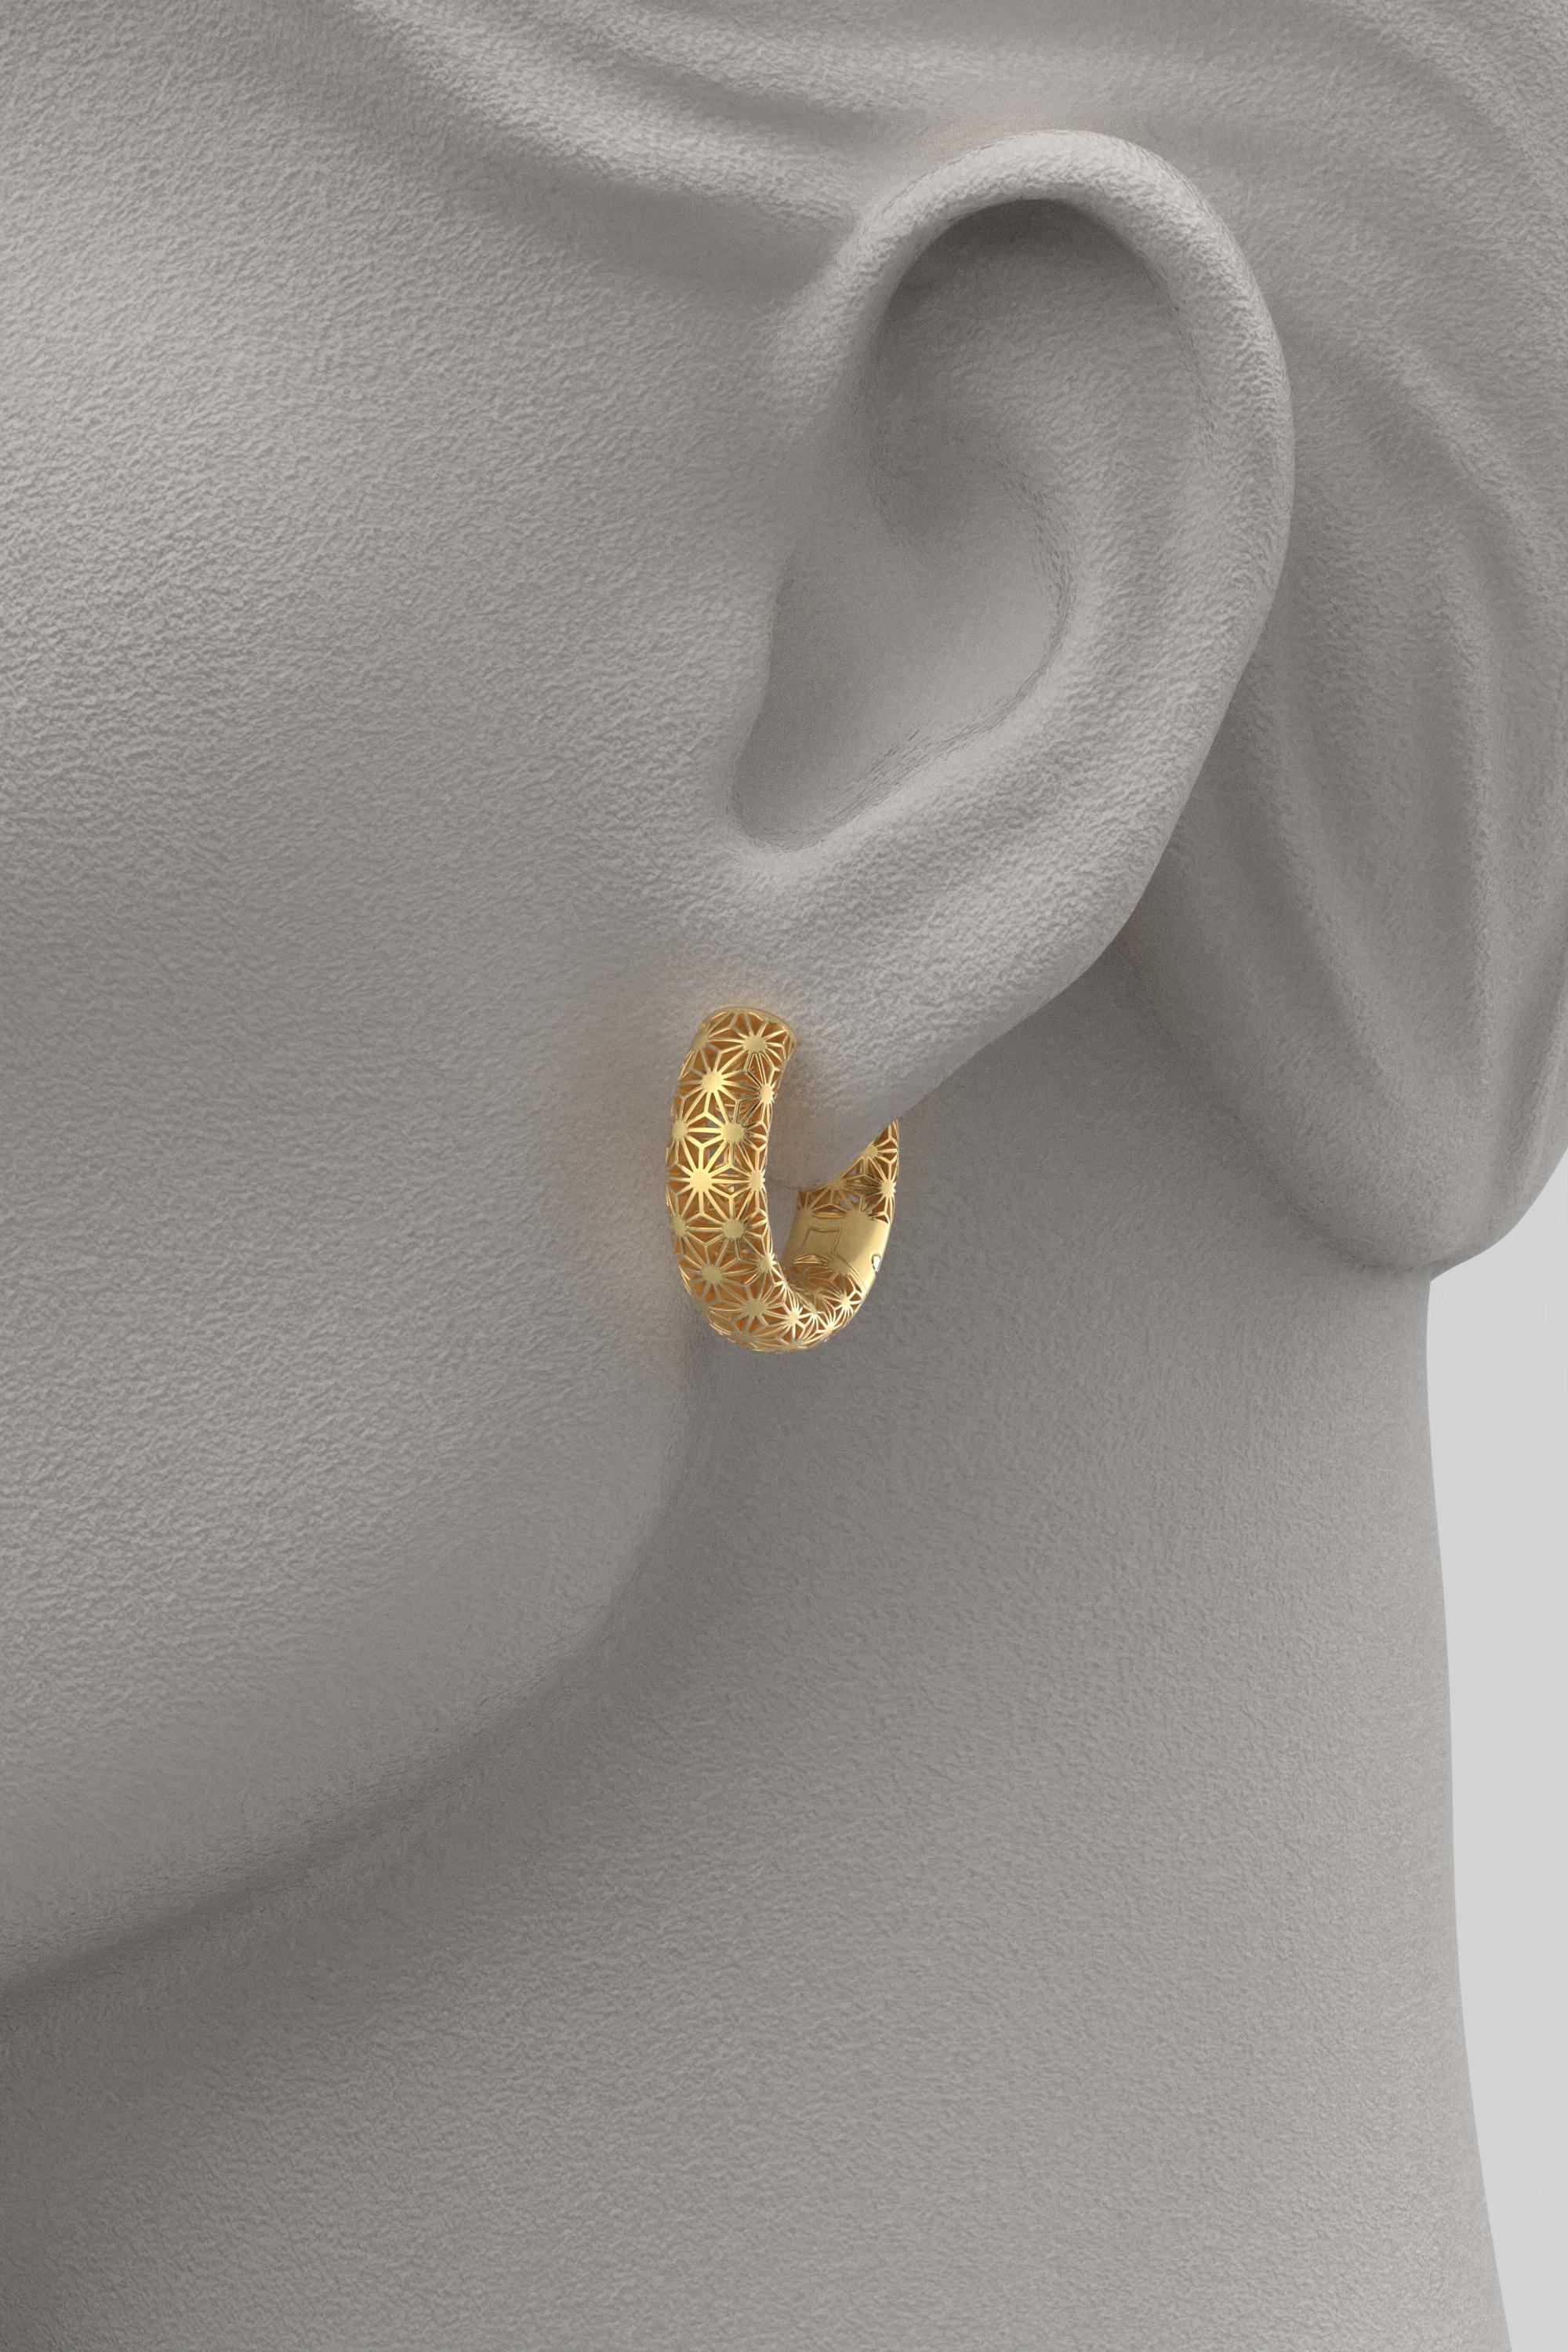 Women's  Oltremare Gioielli 14K Italian Gold Hoop Earrings - Sashiko Japanese Pattern  For Sale